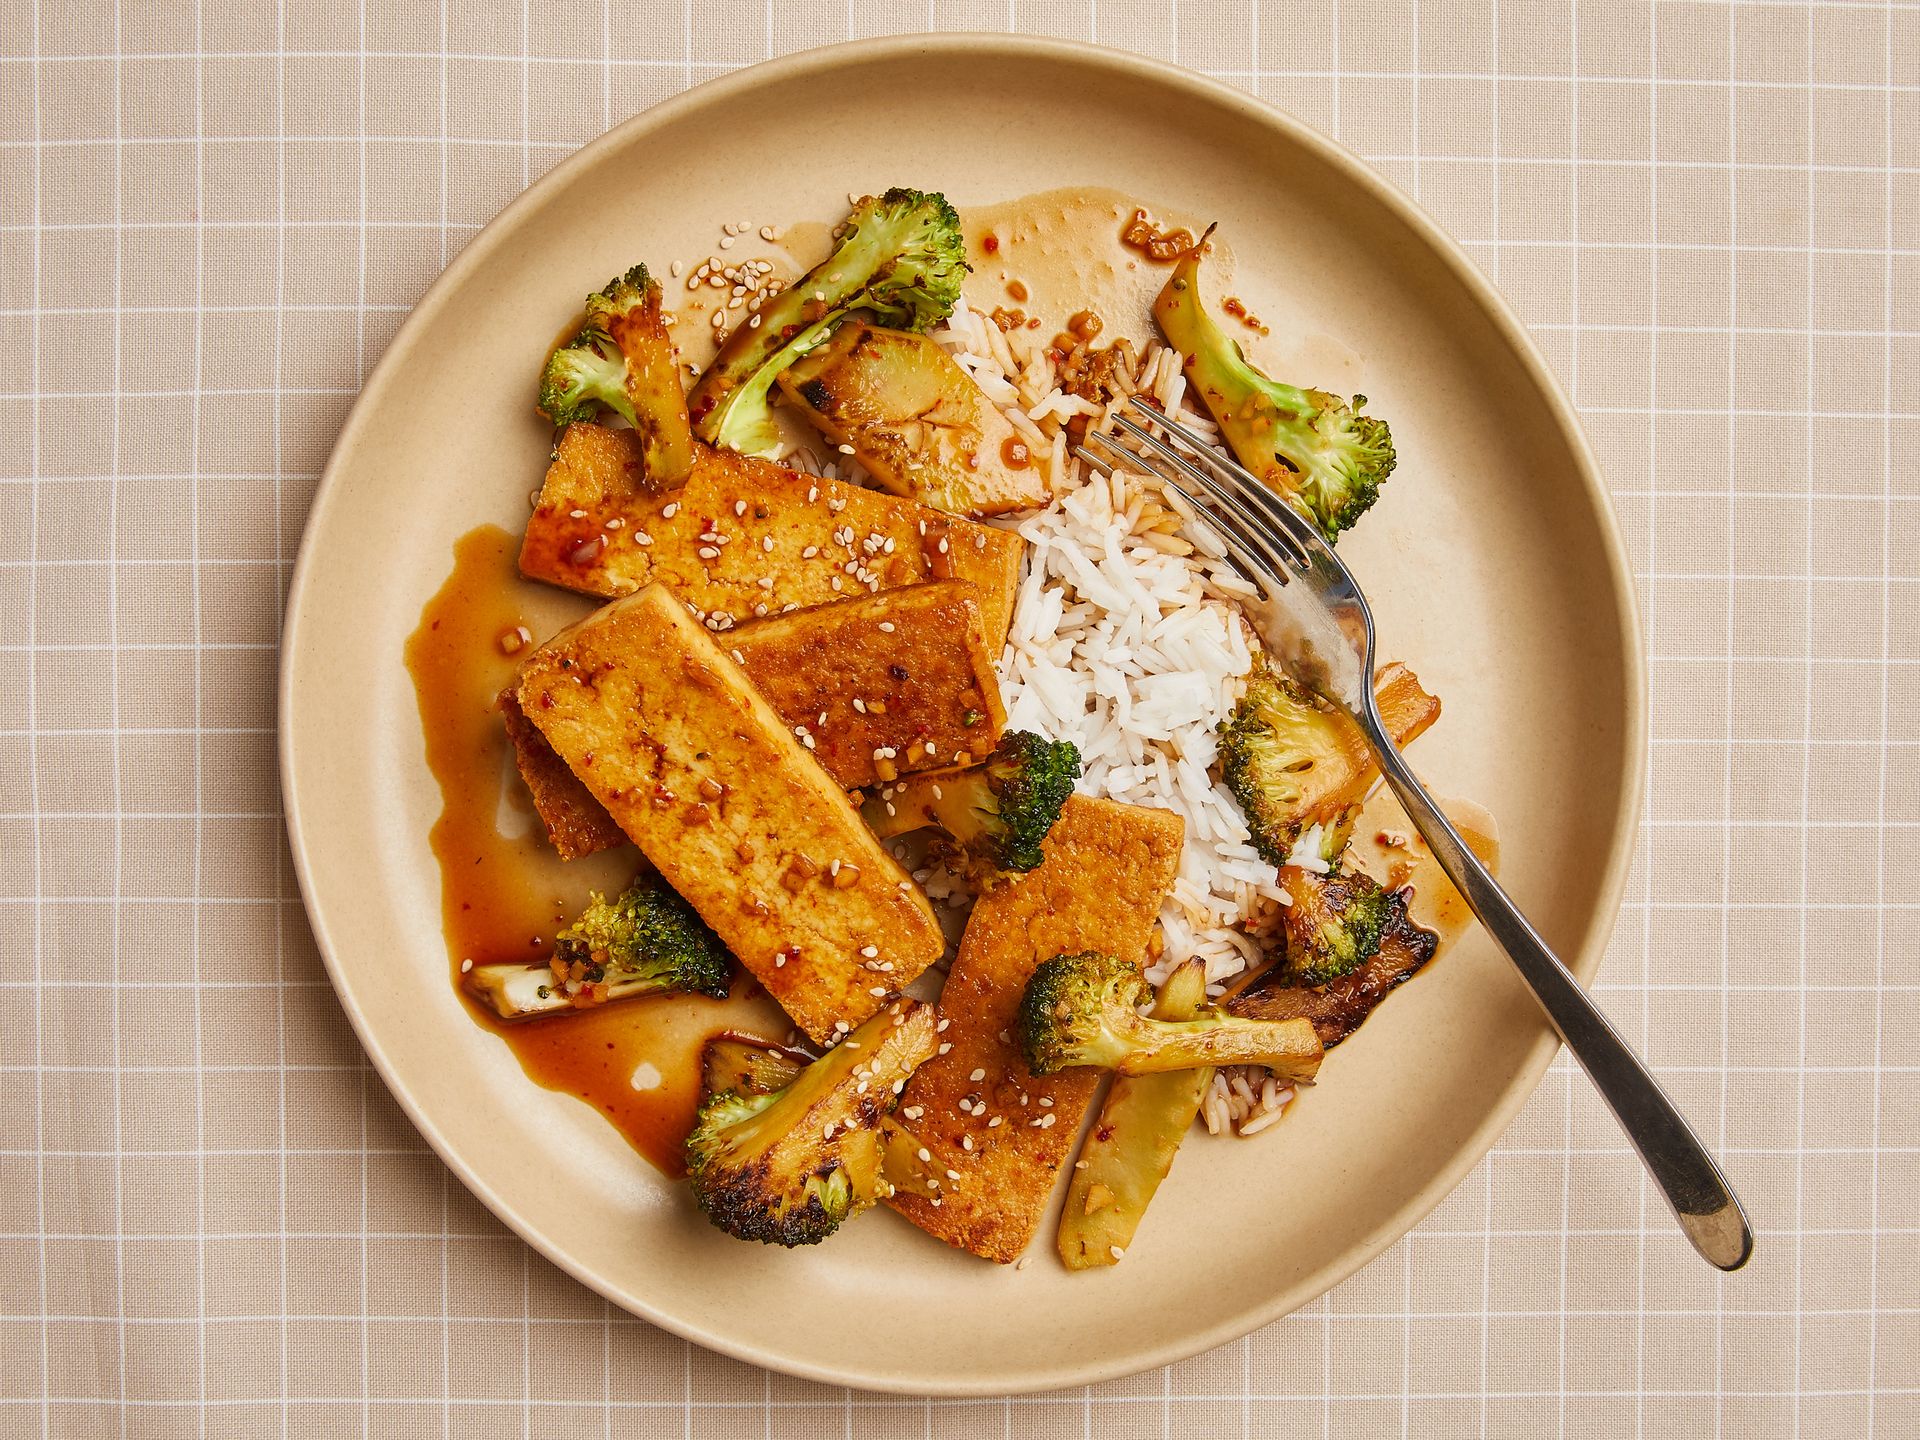 Crispy tofu and broccoli stir-fry